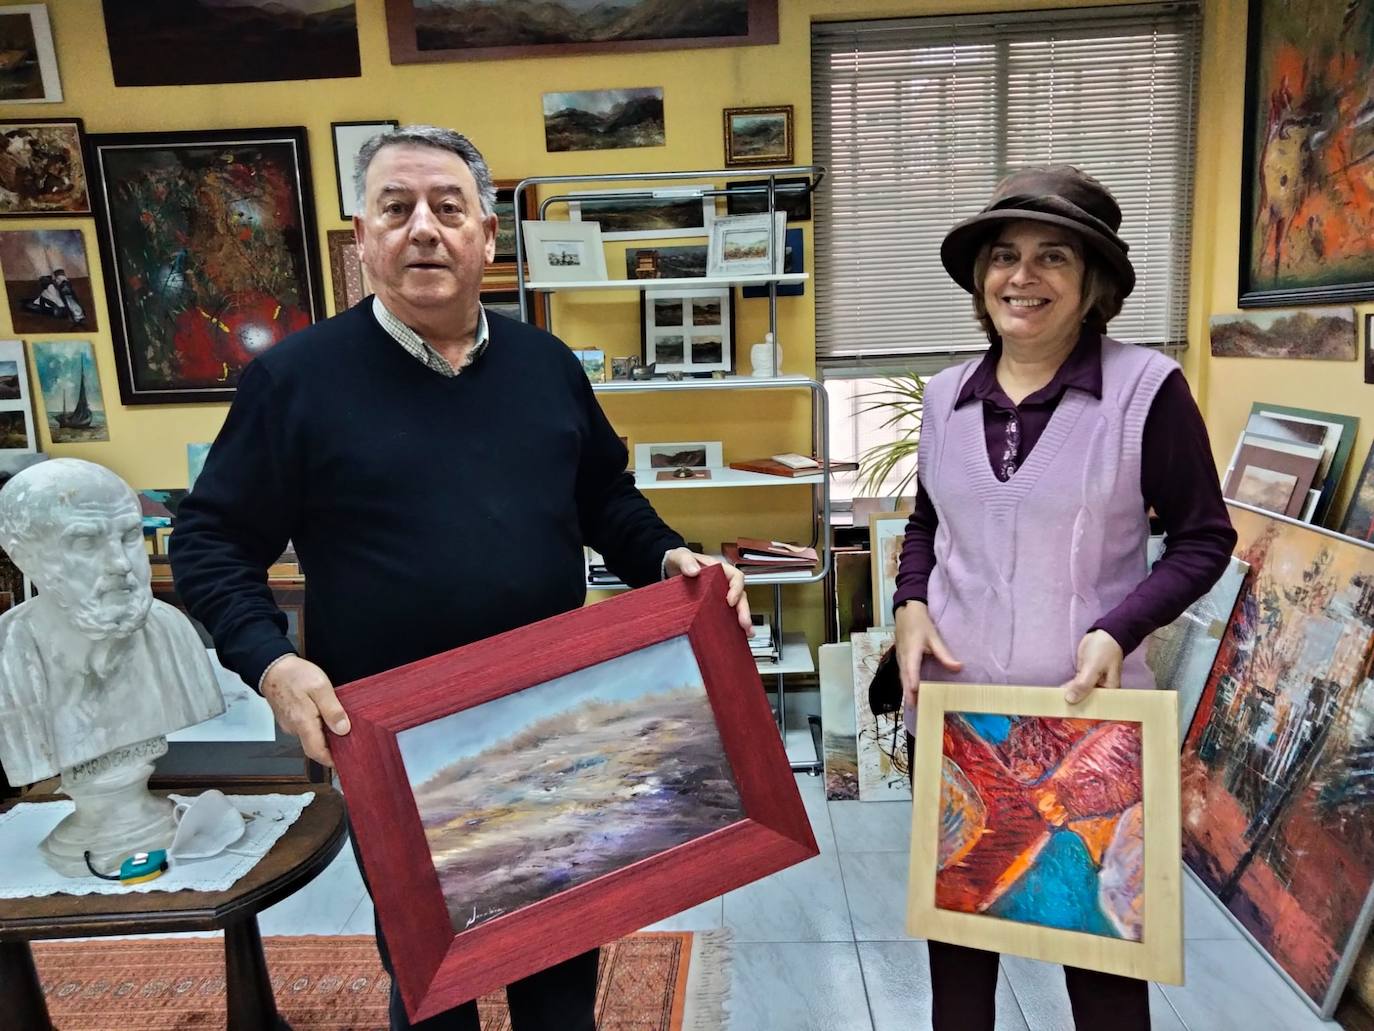 La iniciativa busca compartir el arte en la provincia entre aquellos amantes de la pintura o la fotografía.